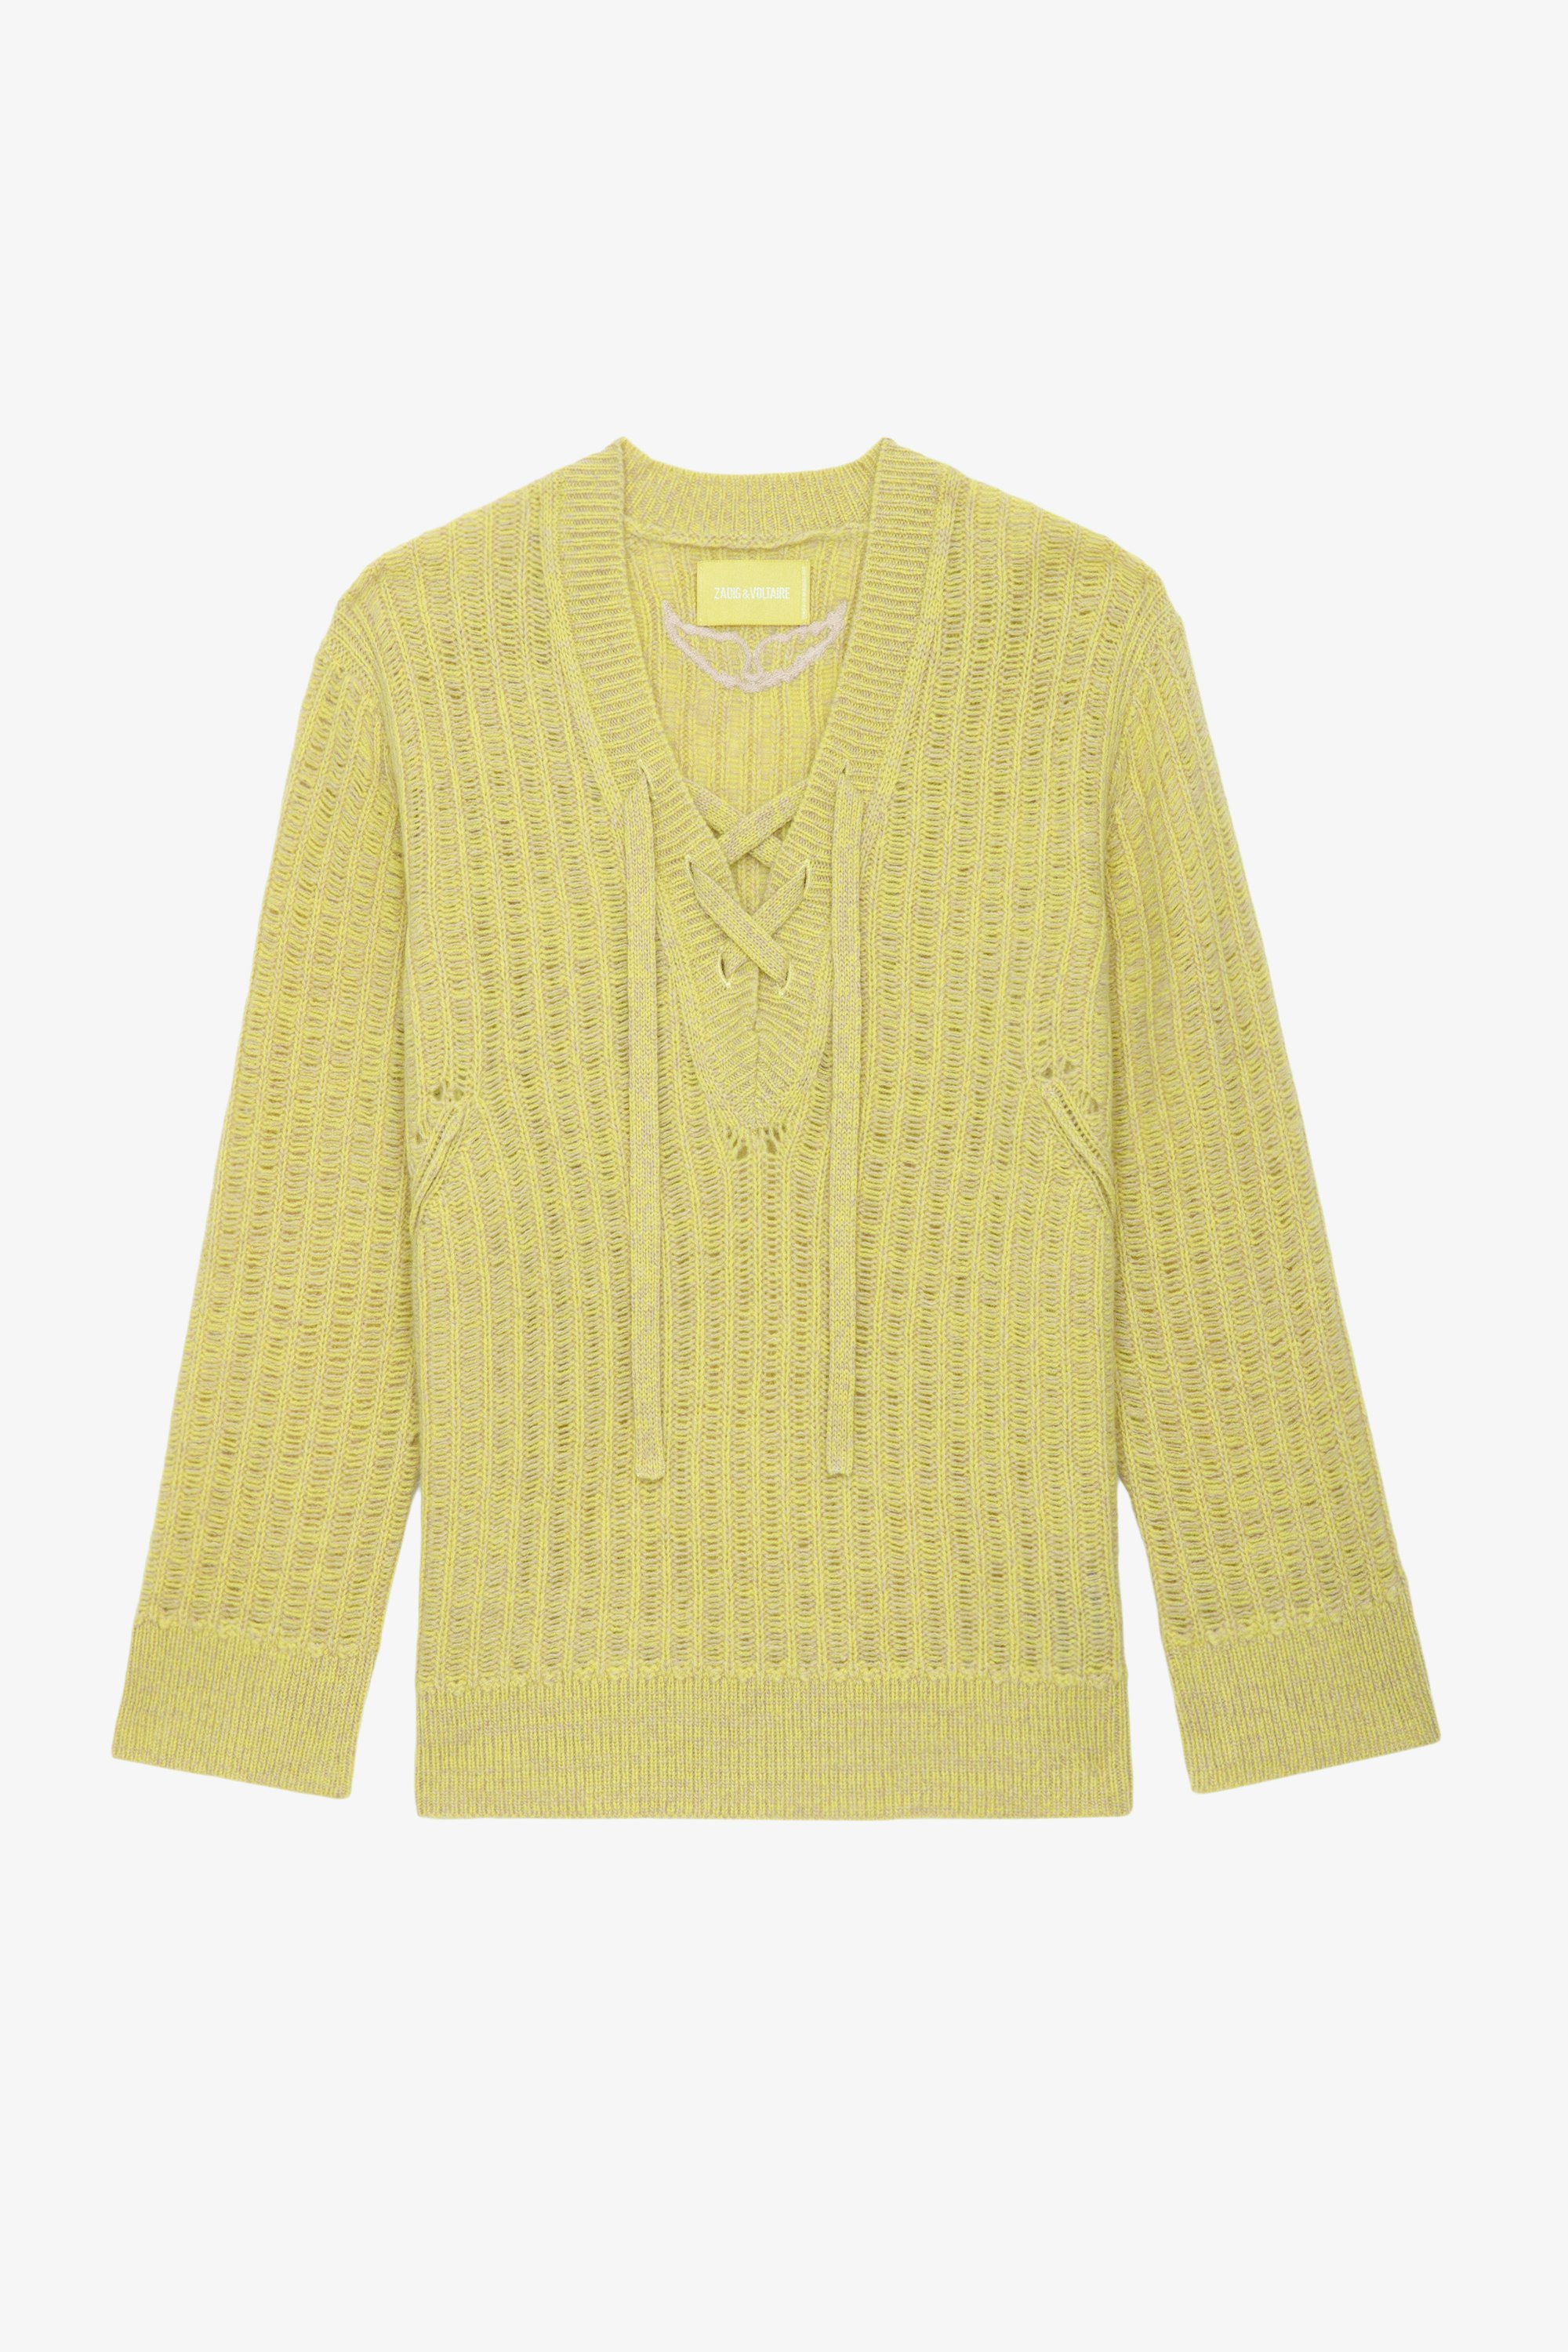 Pull Fanny - Pull ajouré en laine mérinos jaune claire à manches longues et liens de serrage.